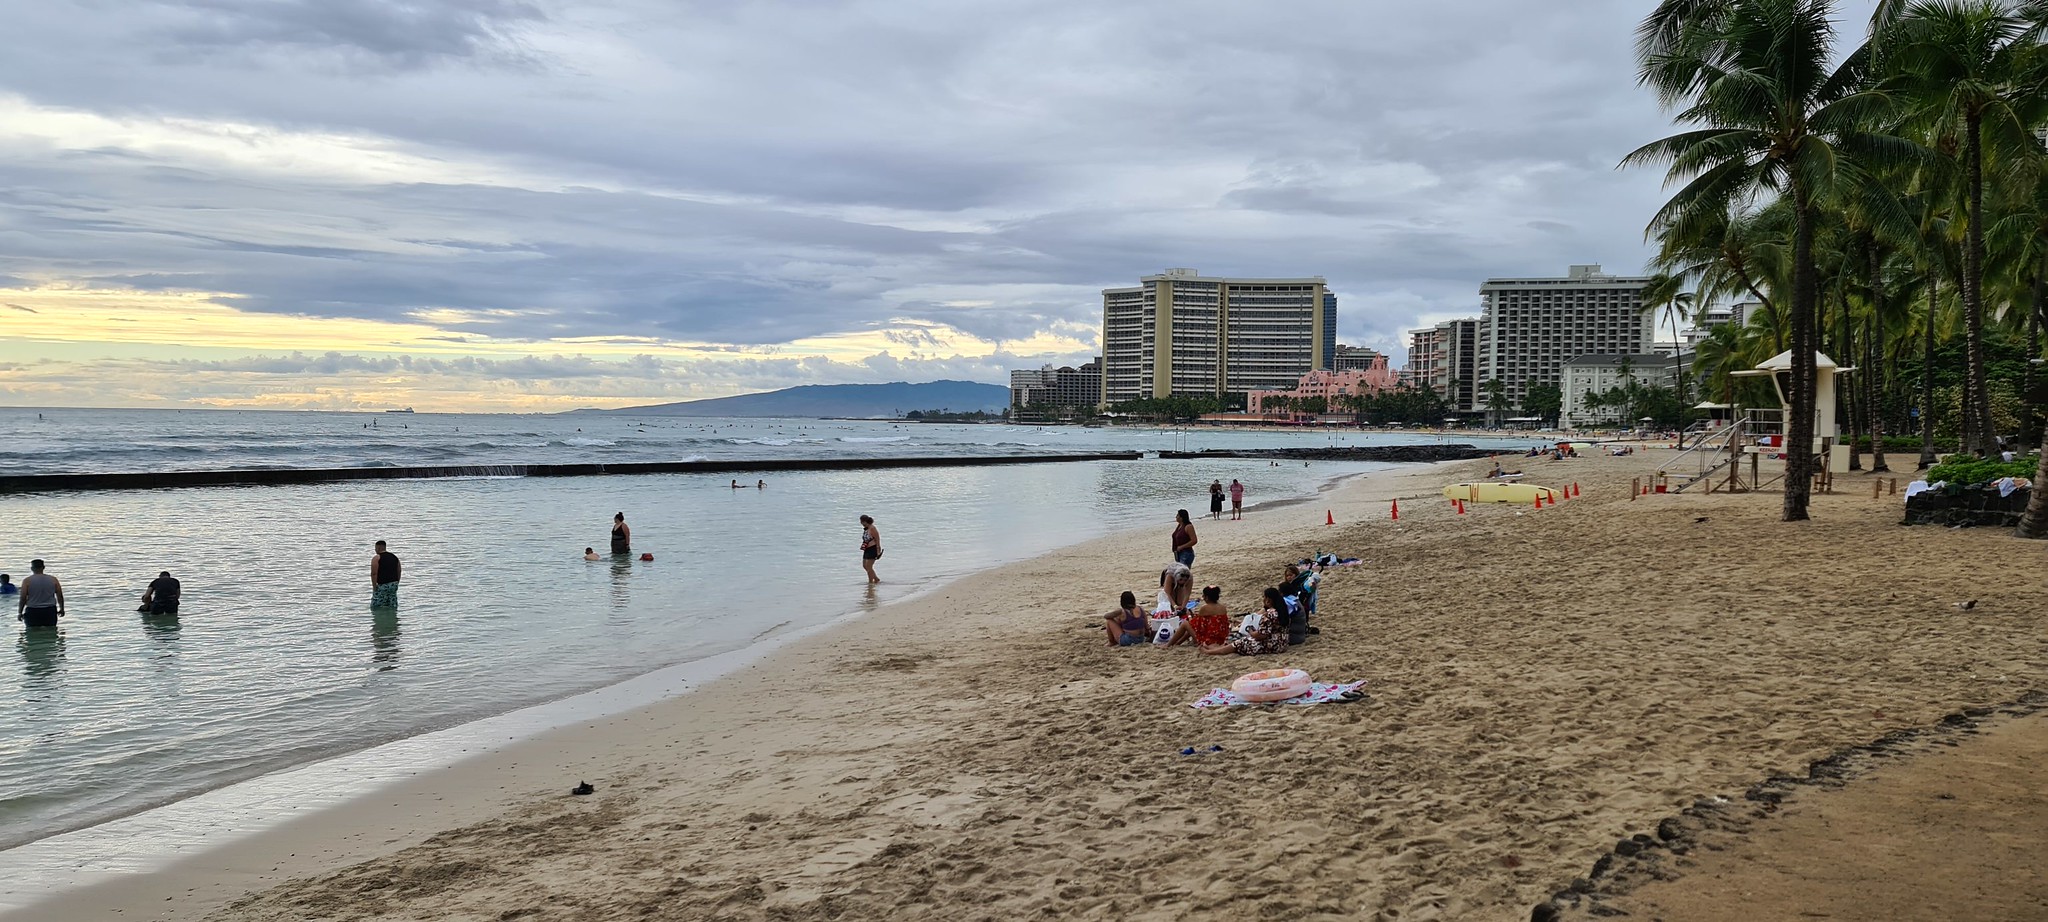 Waikiki beach in Honululu